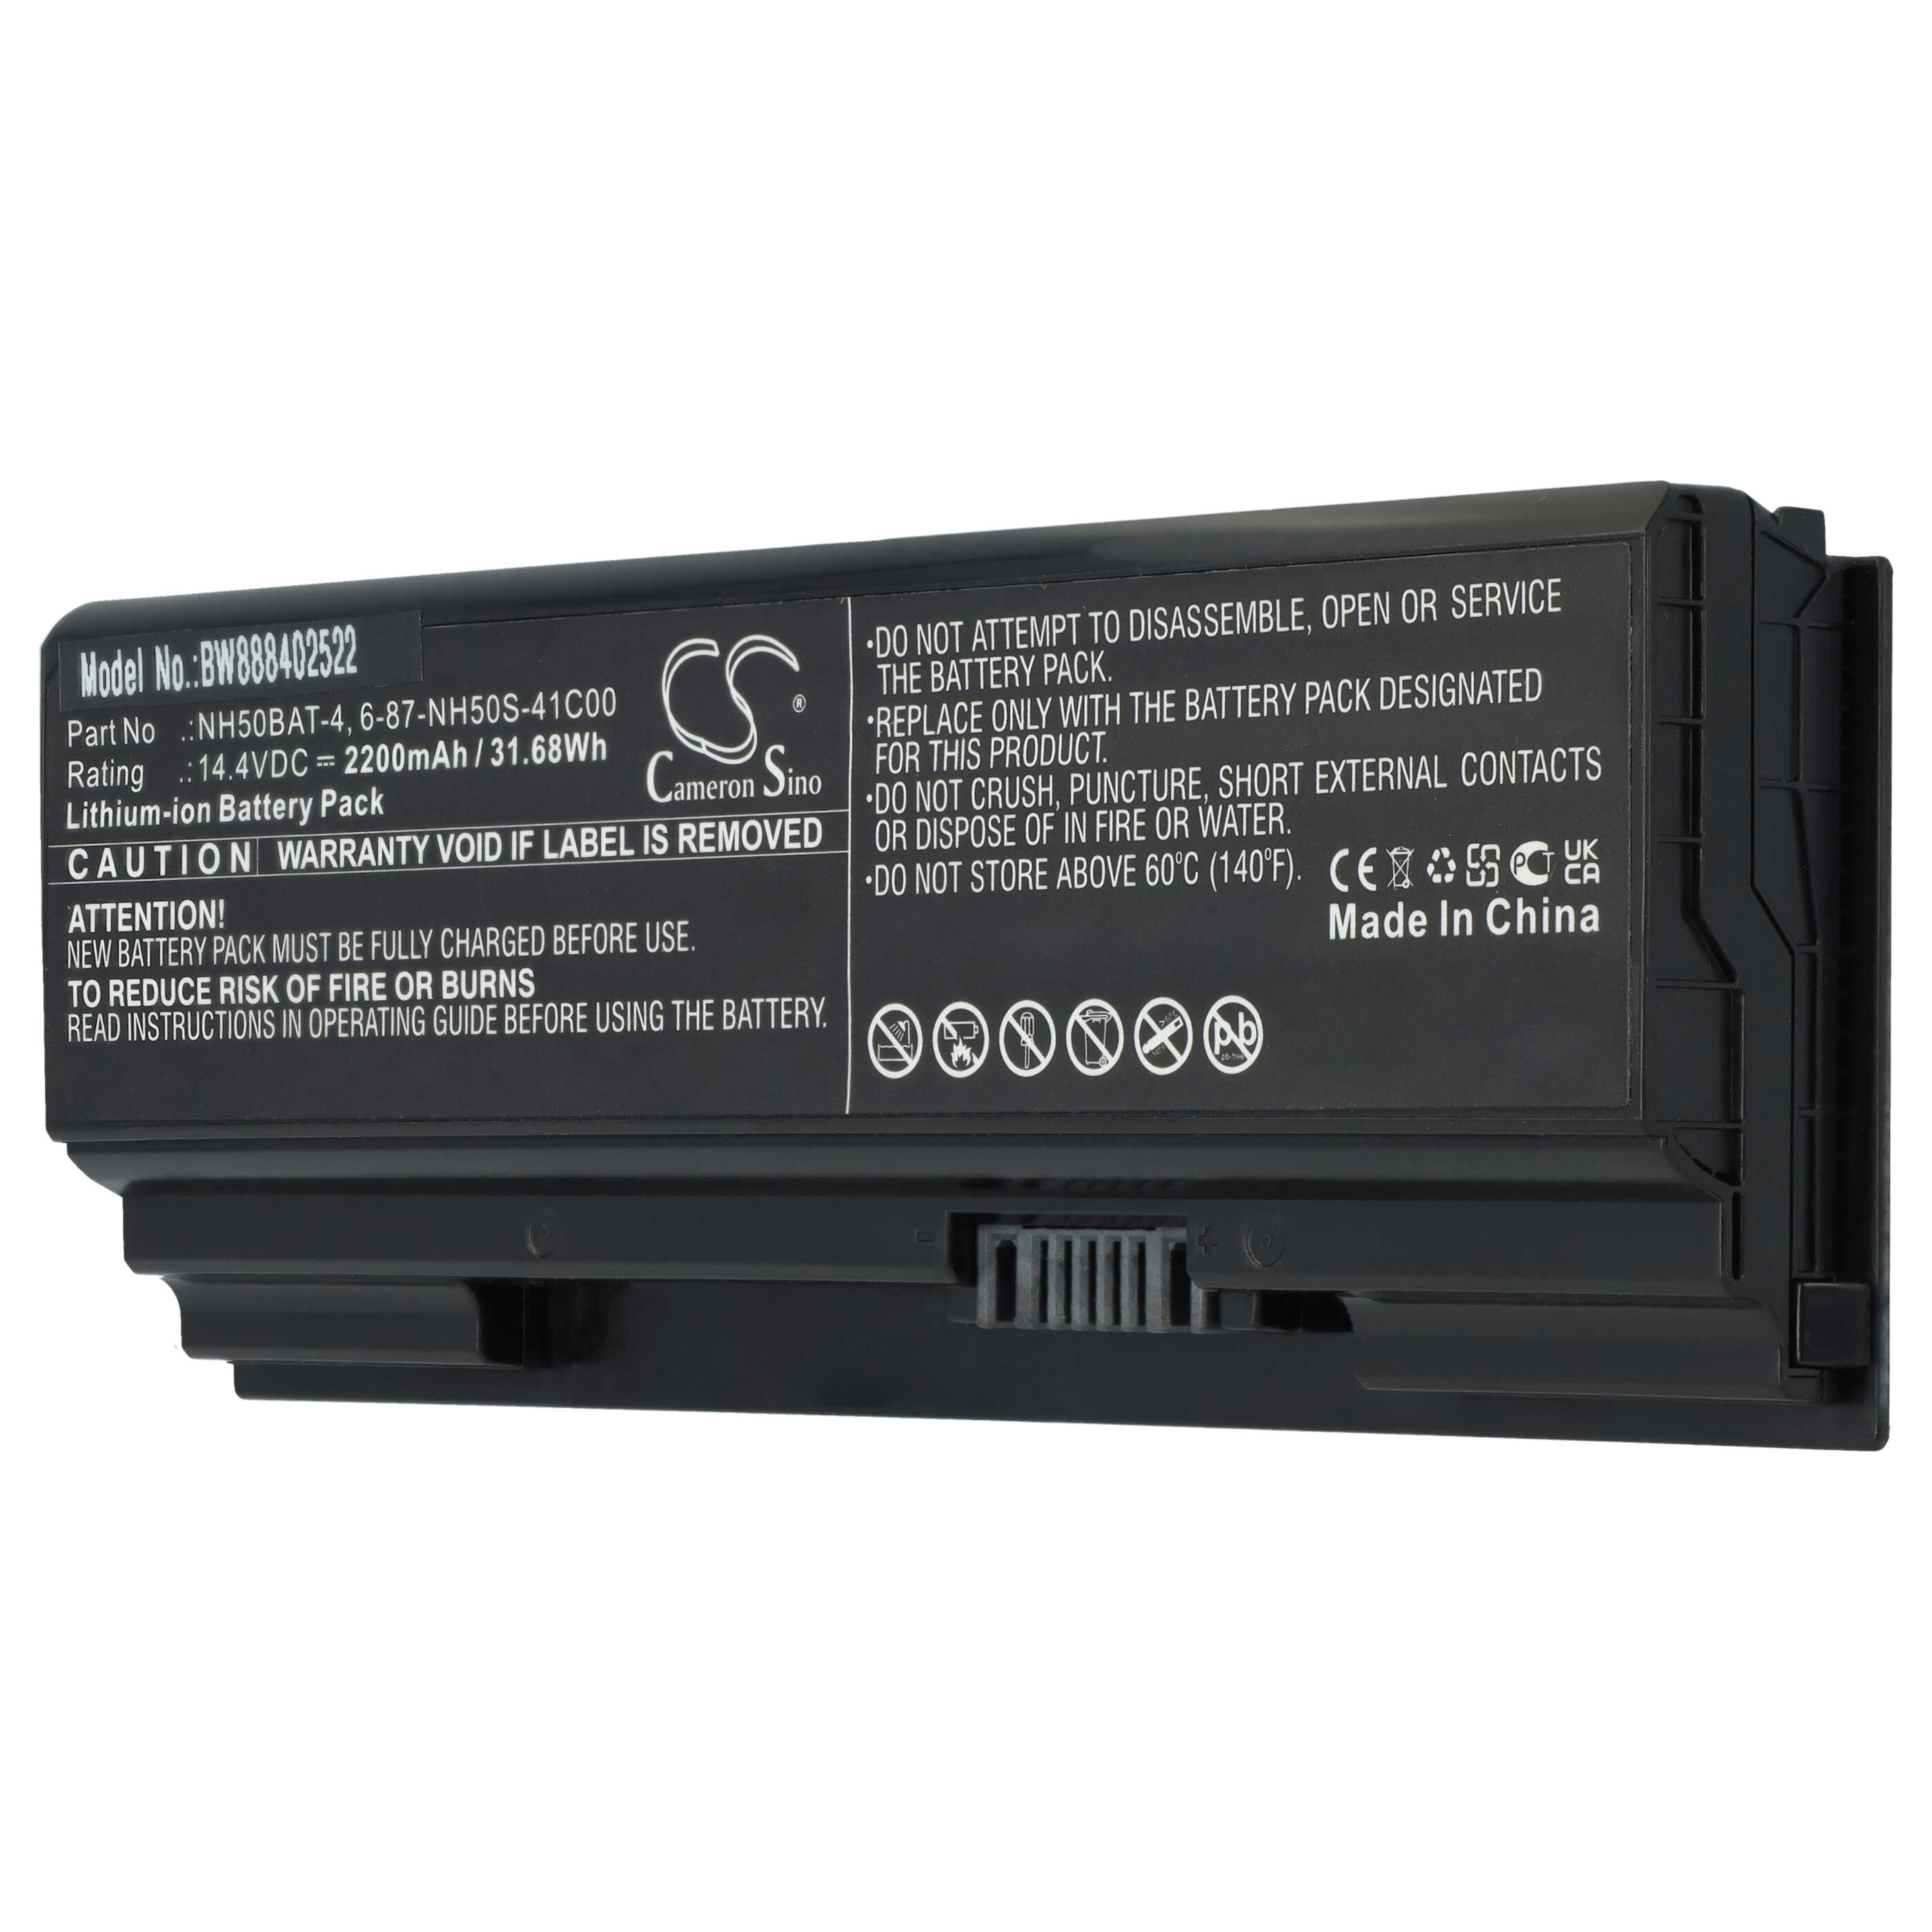 Batterie remplace Aorus 6-87-NH50S-41C00, NH50BAT-4 pour ordinateur portable - 2200mAh 14,4V Li-ion